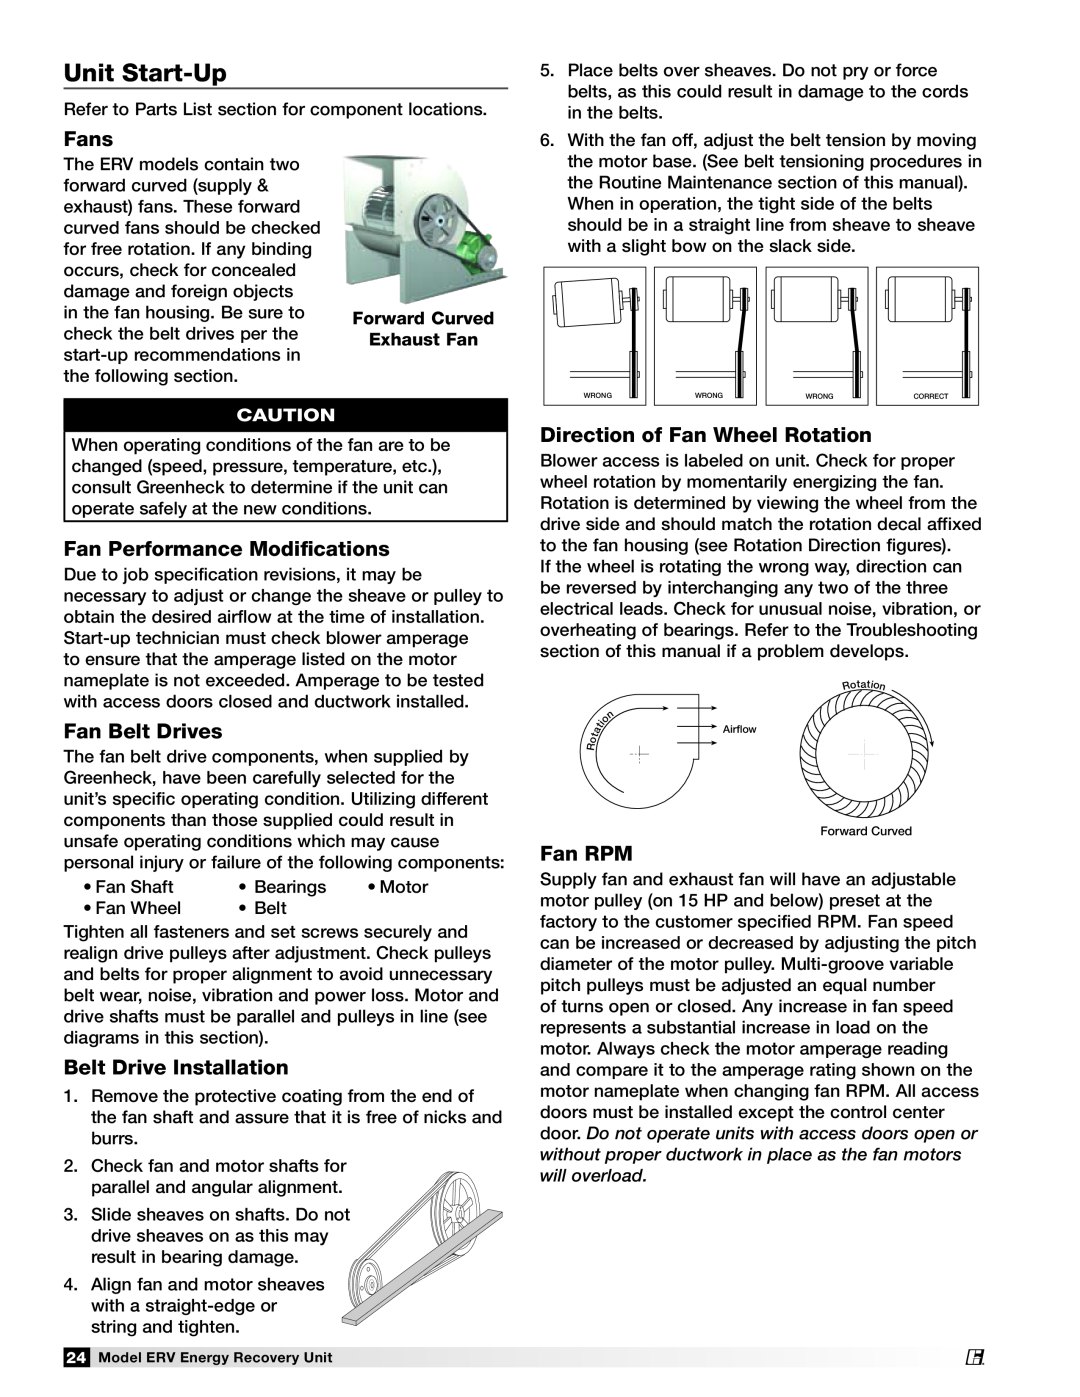 Greenheck Fan ERV-581 manual Unit Start-Up, Fans, Fan Performance Modifications, Fan Belt Drives, Belt Drive Installation 